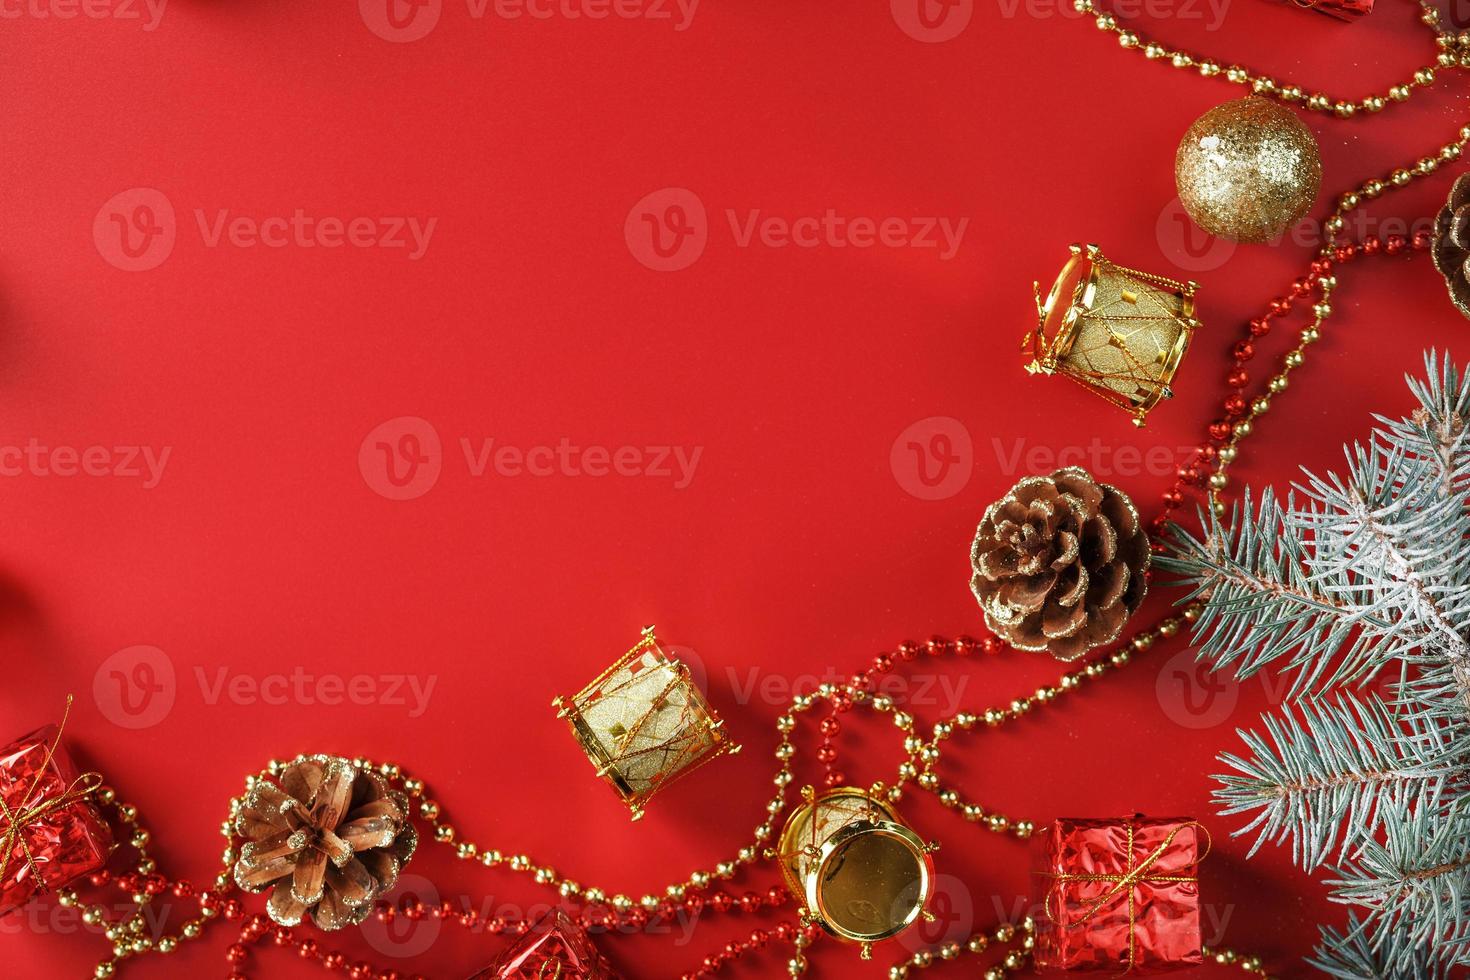 jul arrangemang av jul ornament och jul träd dekorationer på en röd bakgrund. foto